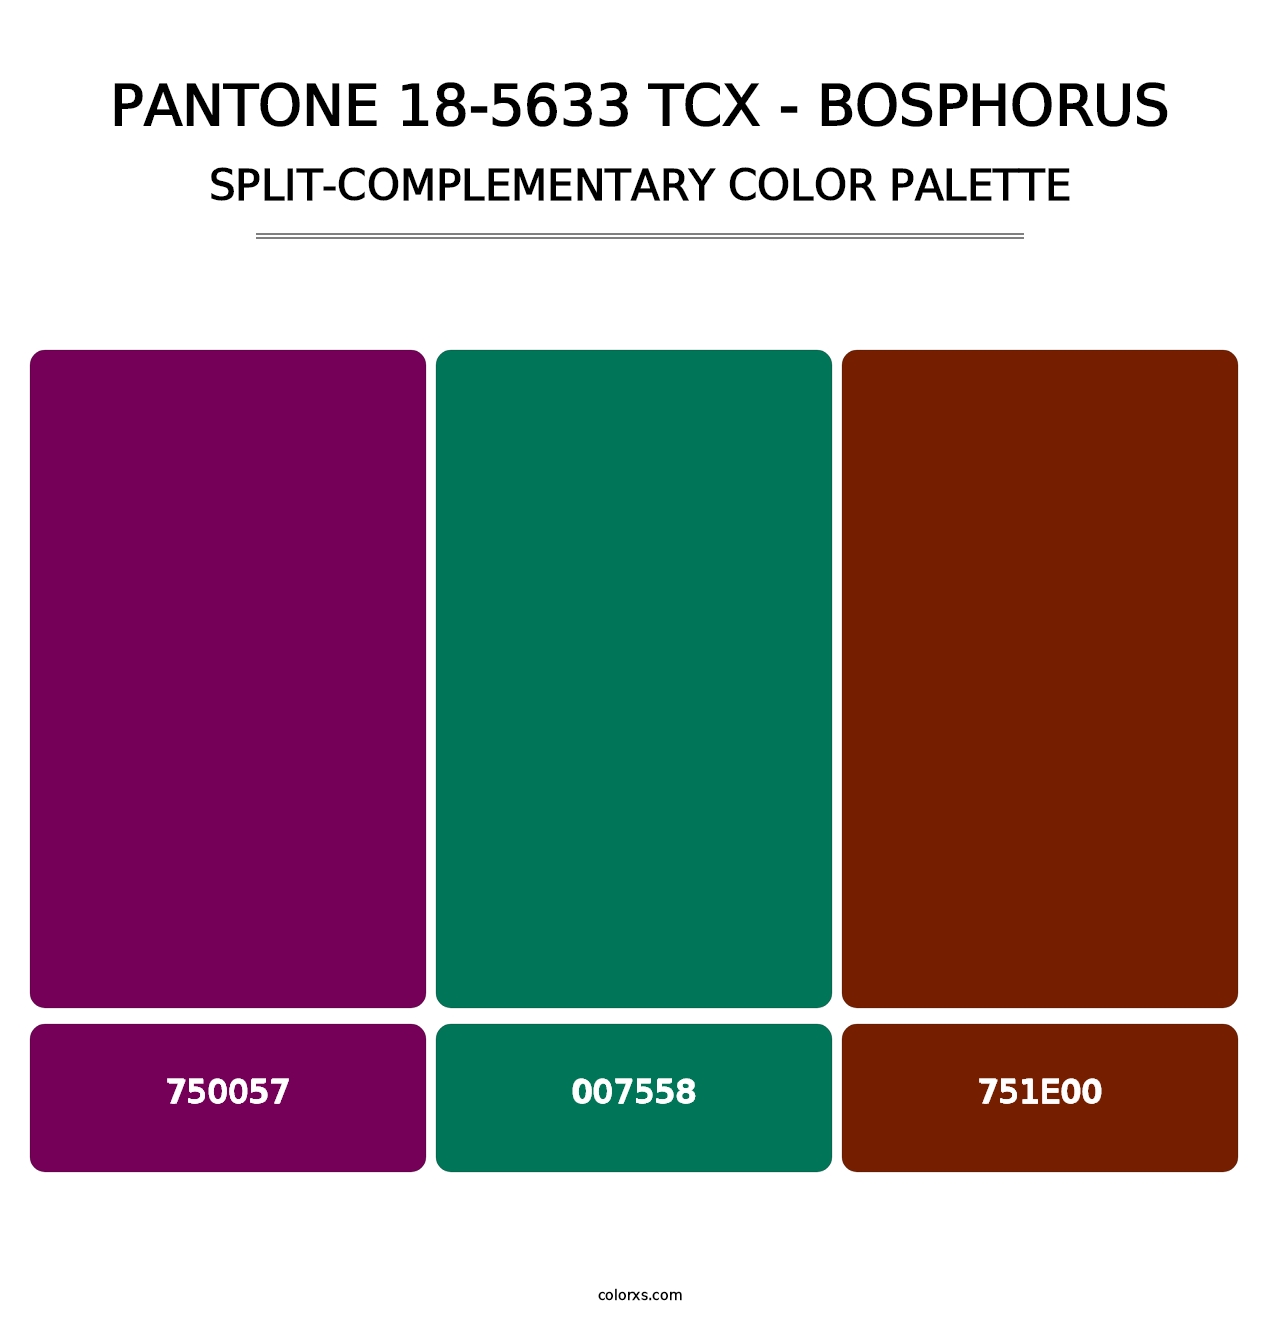 PANTONE 18-5633 TCX - Bosphorus - Split-Complementary Color Palette